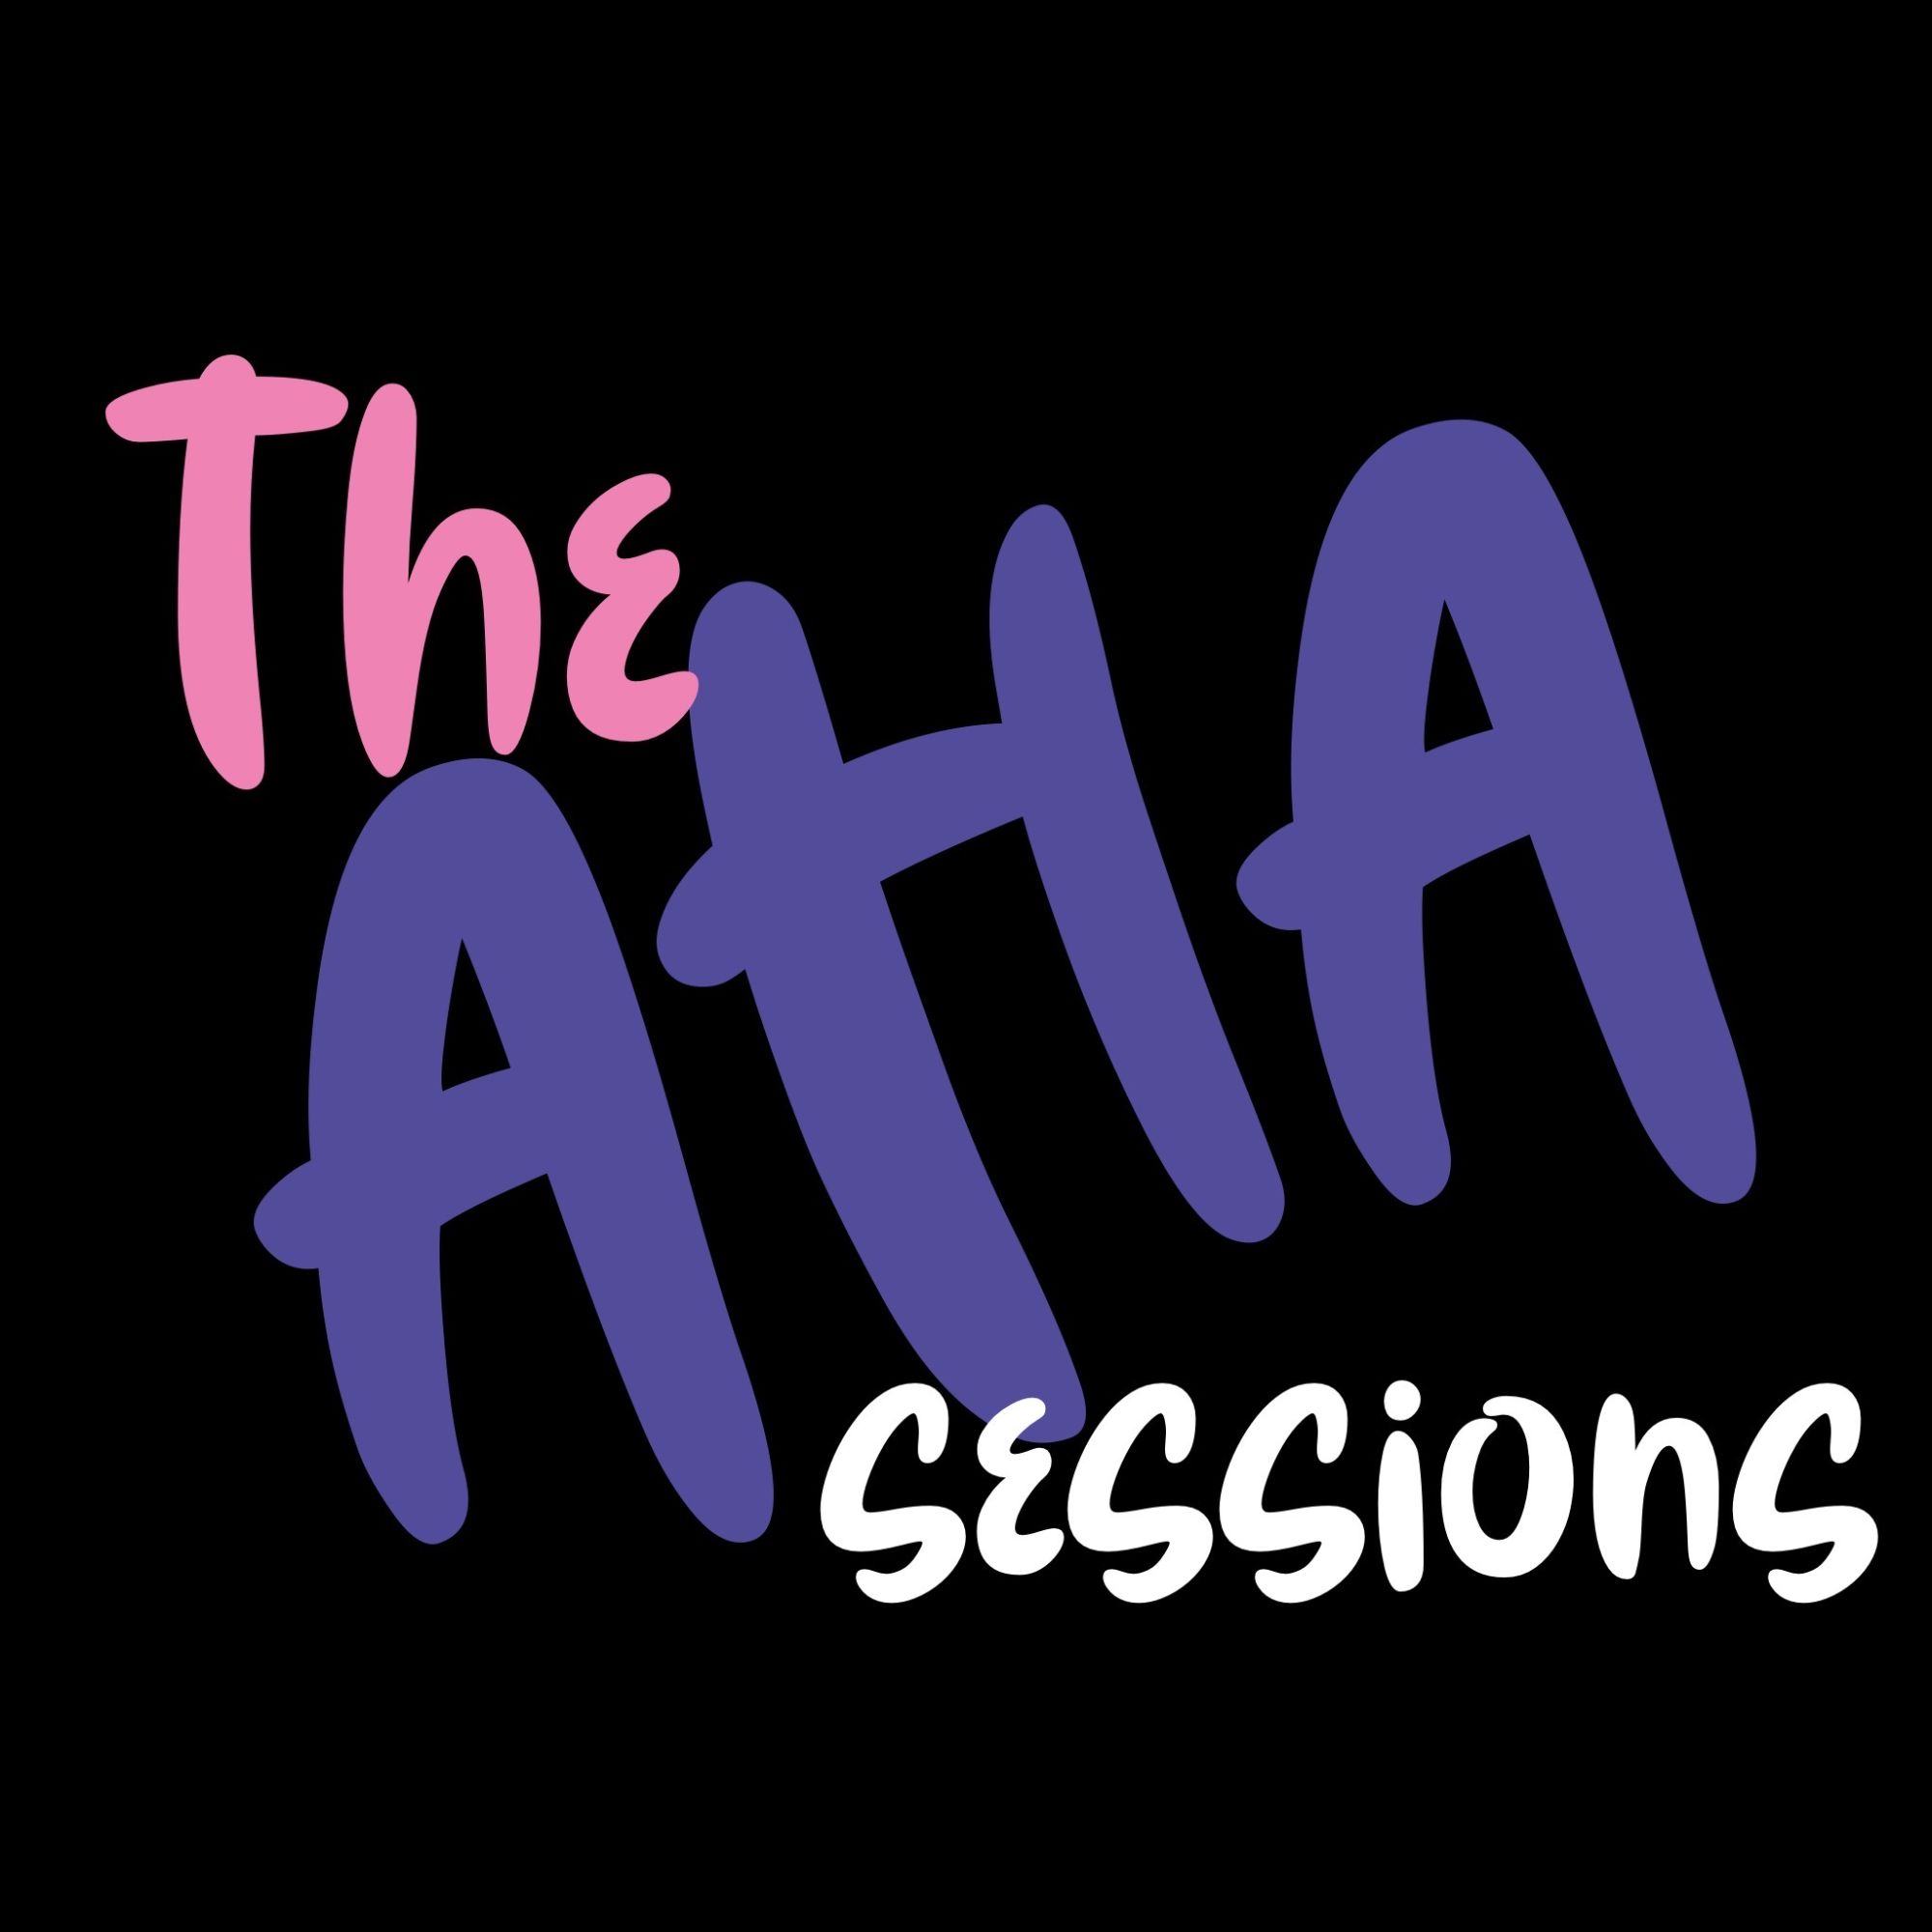 the aha sessions